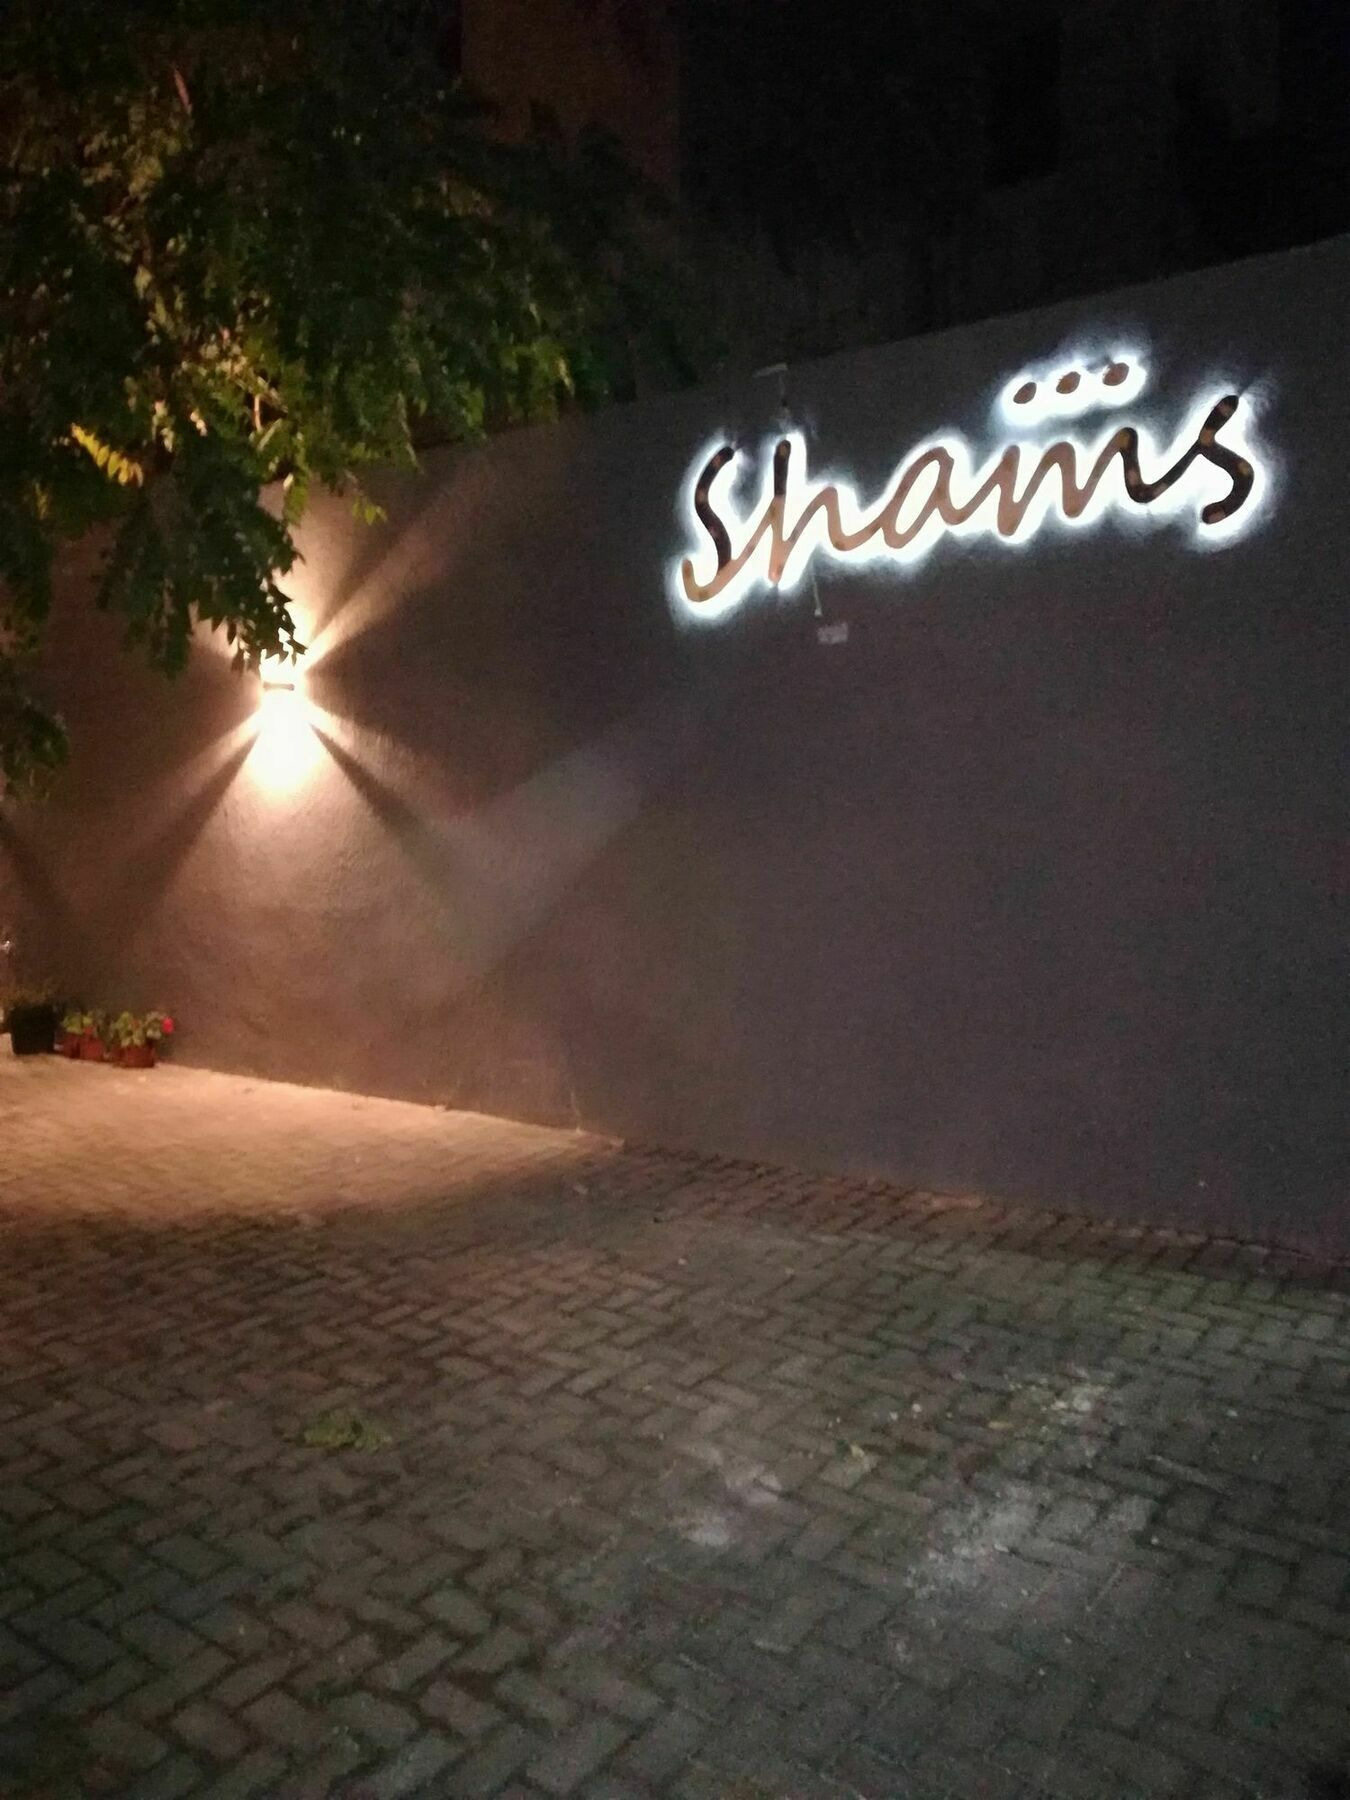 Shams Alweibdeh Hotel Apartments Amman Luaran gambar